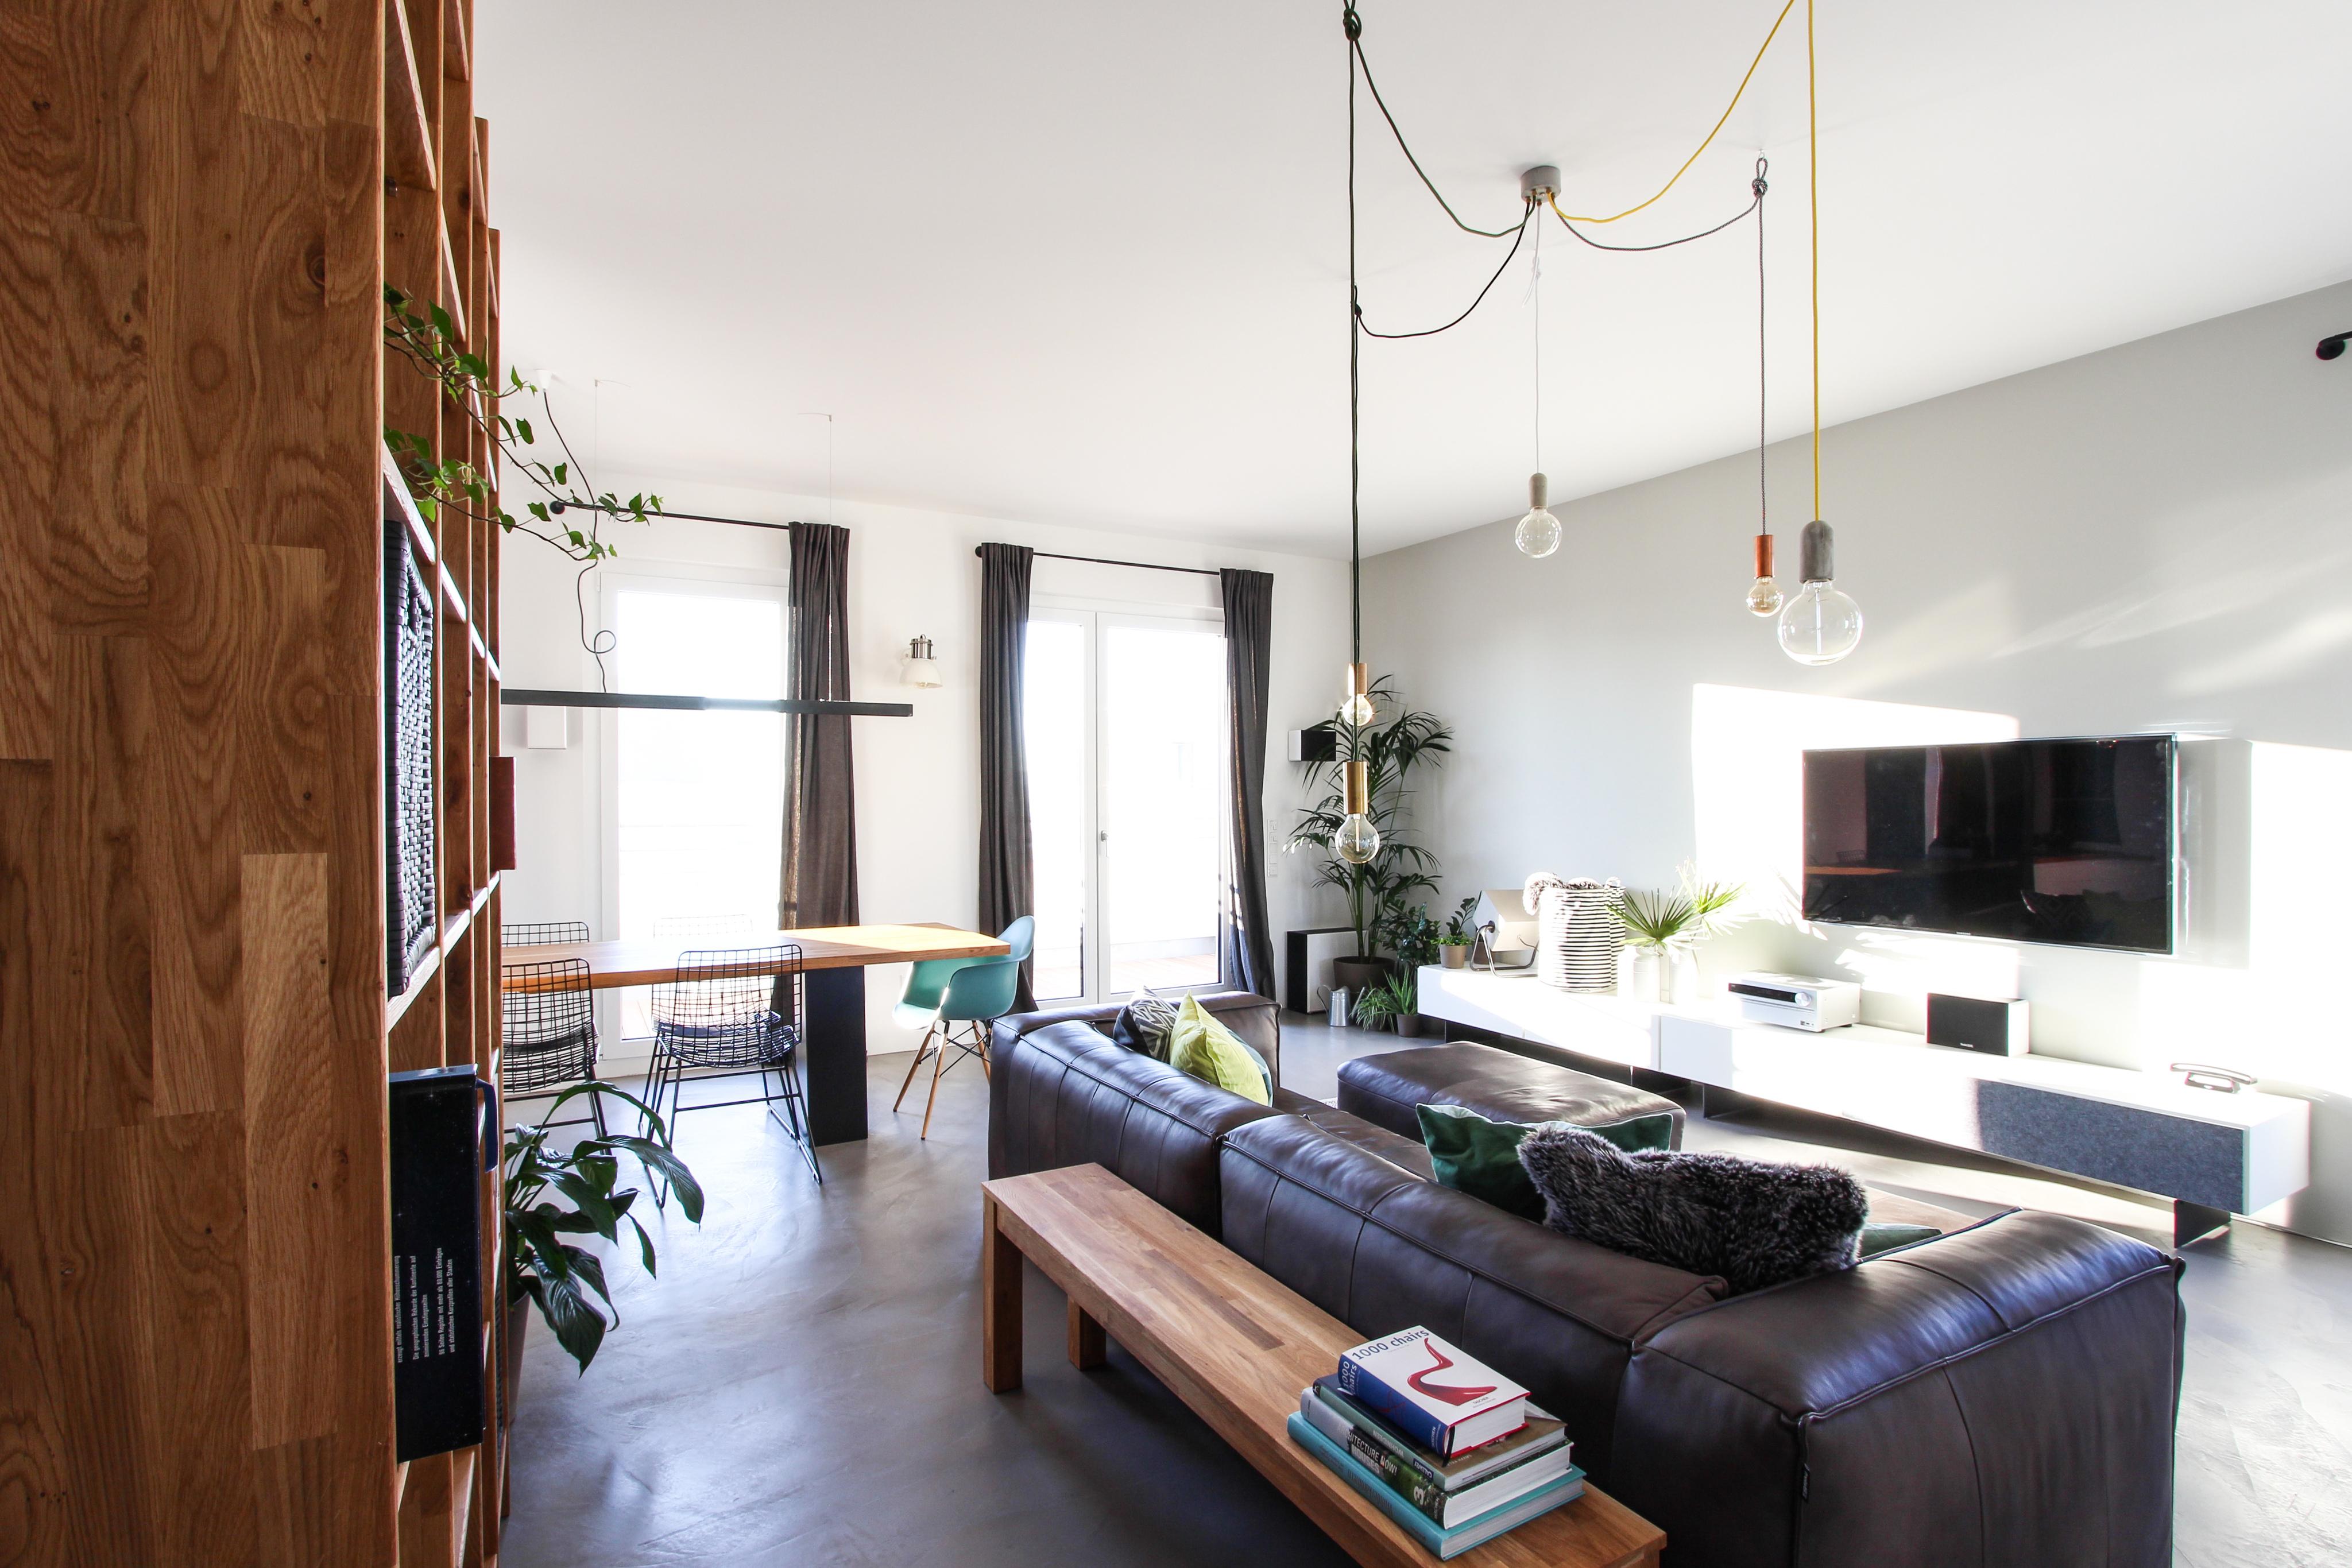 Offenes Wohnzimmer mit Ledercouch #holzbank #pendelleuchte ©EXTRAVIEL office & home design